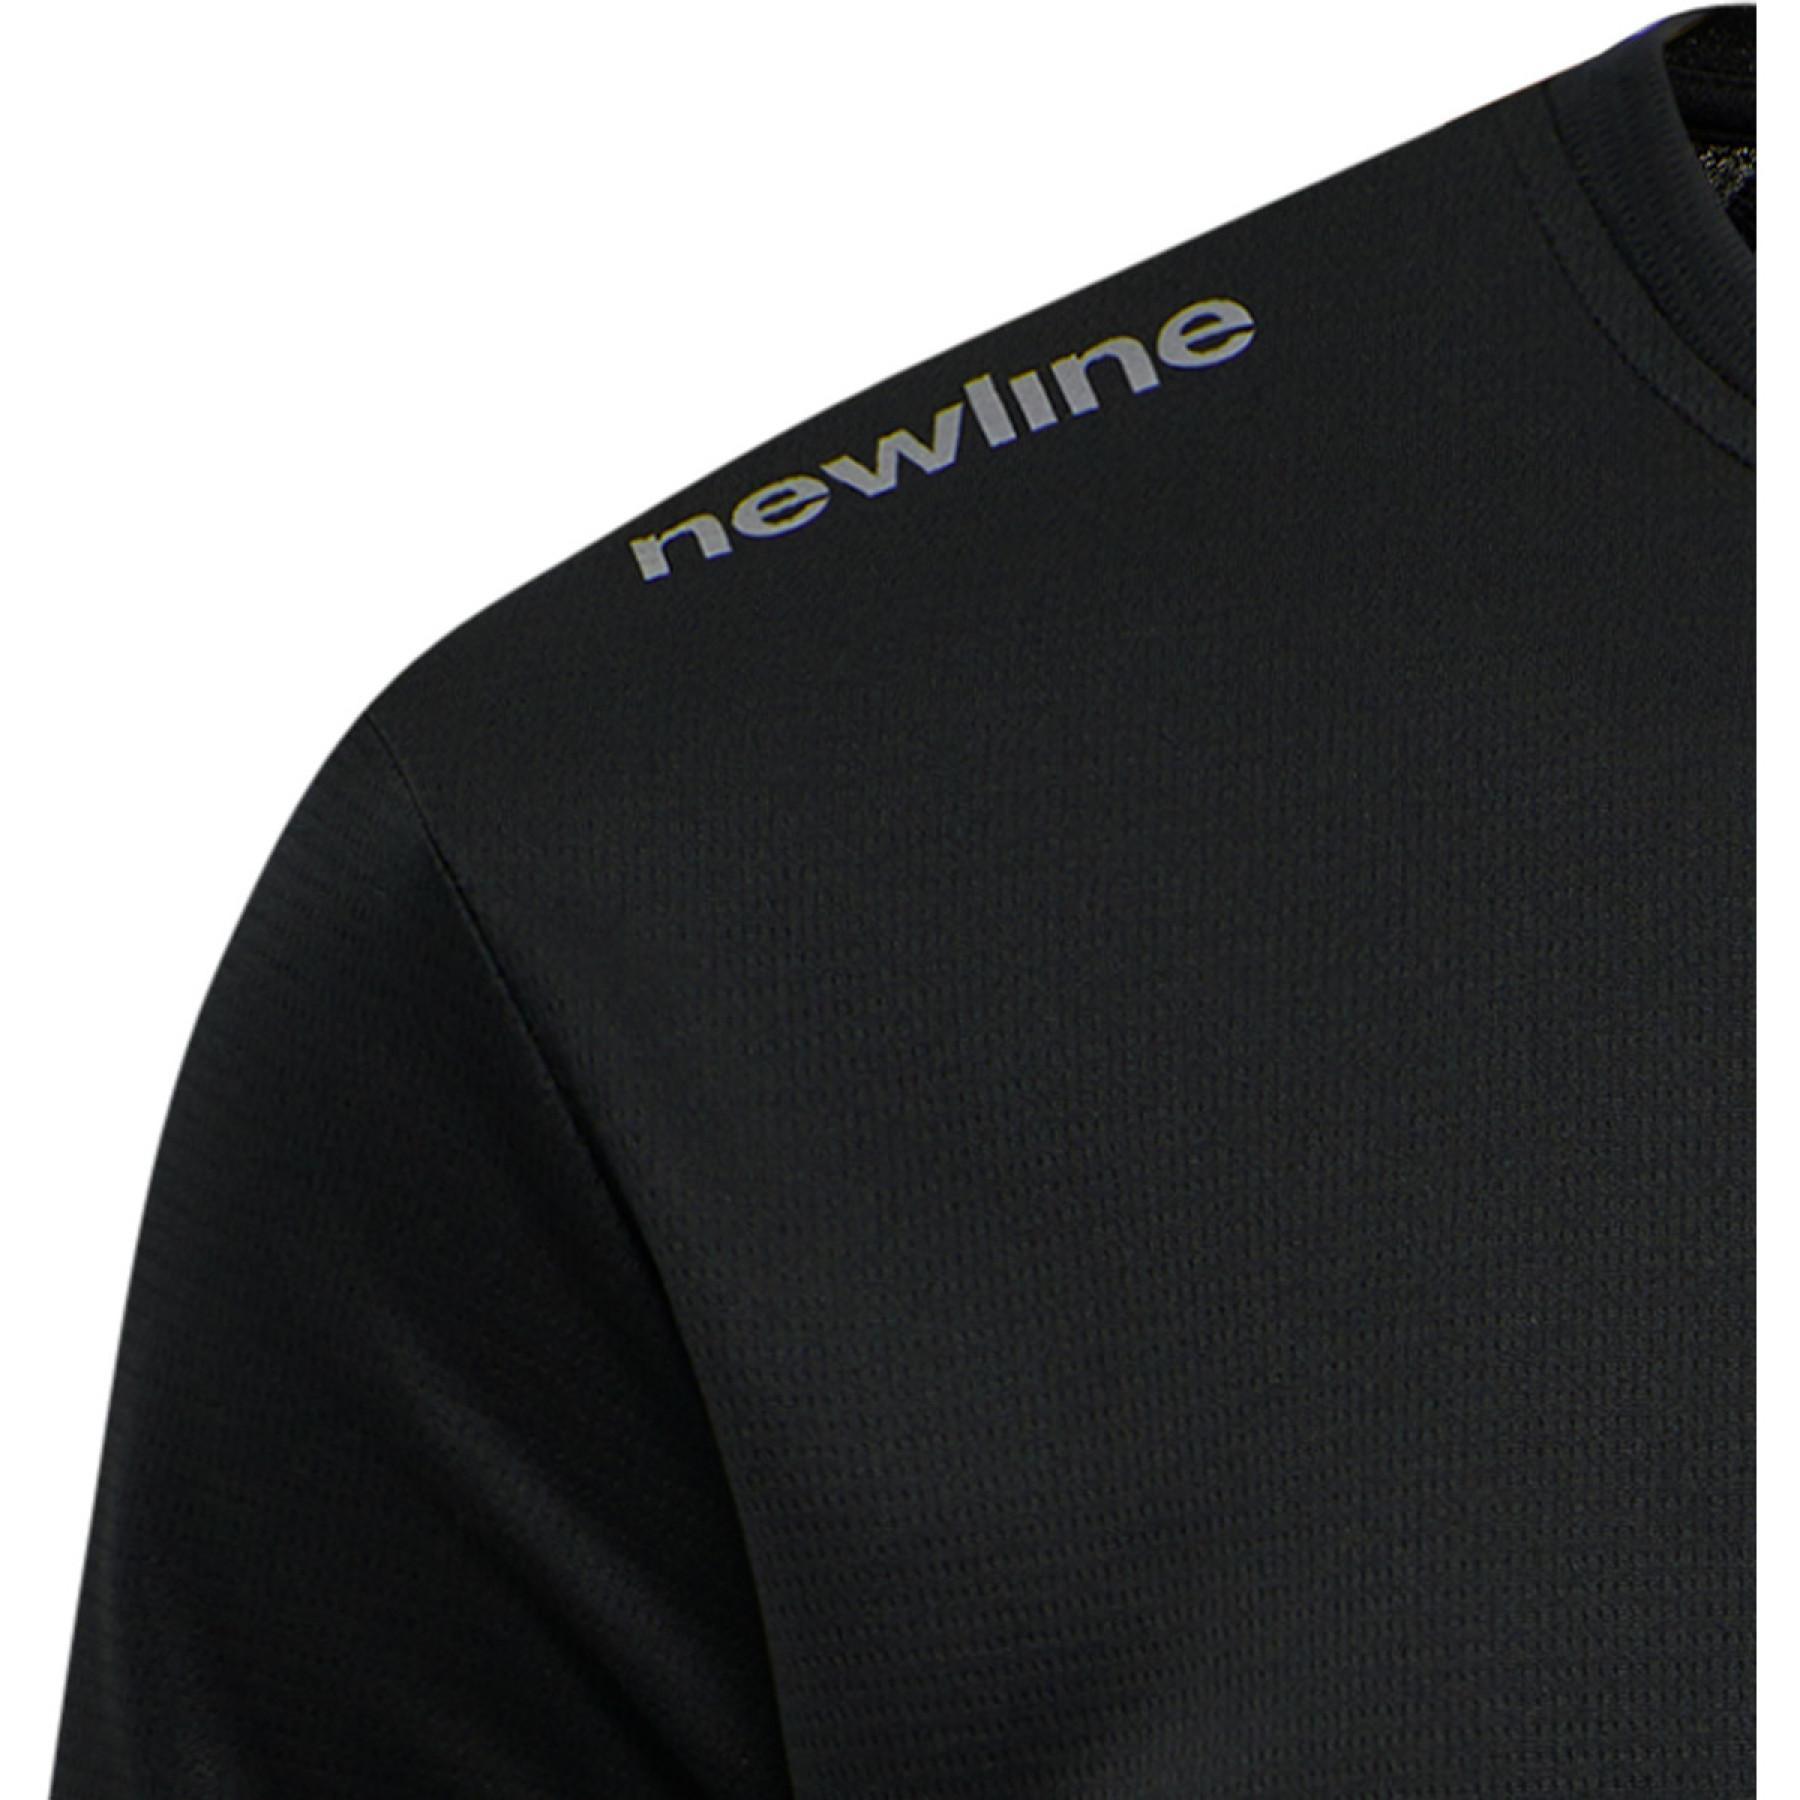 Newline MEN'S CORE FUNCTIONAL T-SHIRT S/S - BLACK